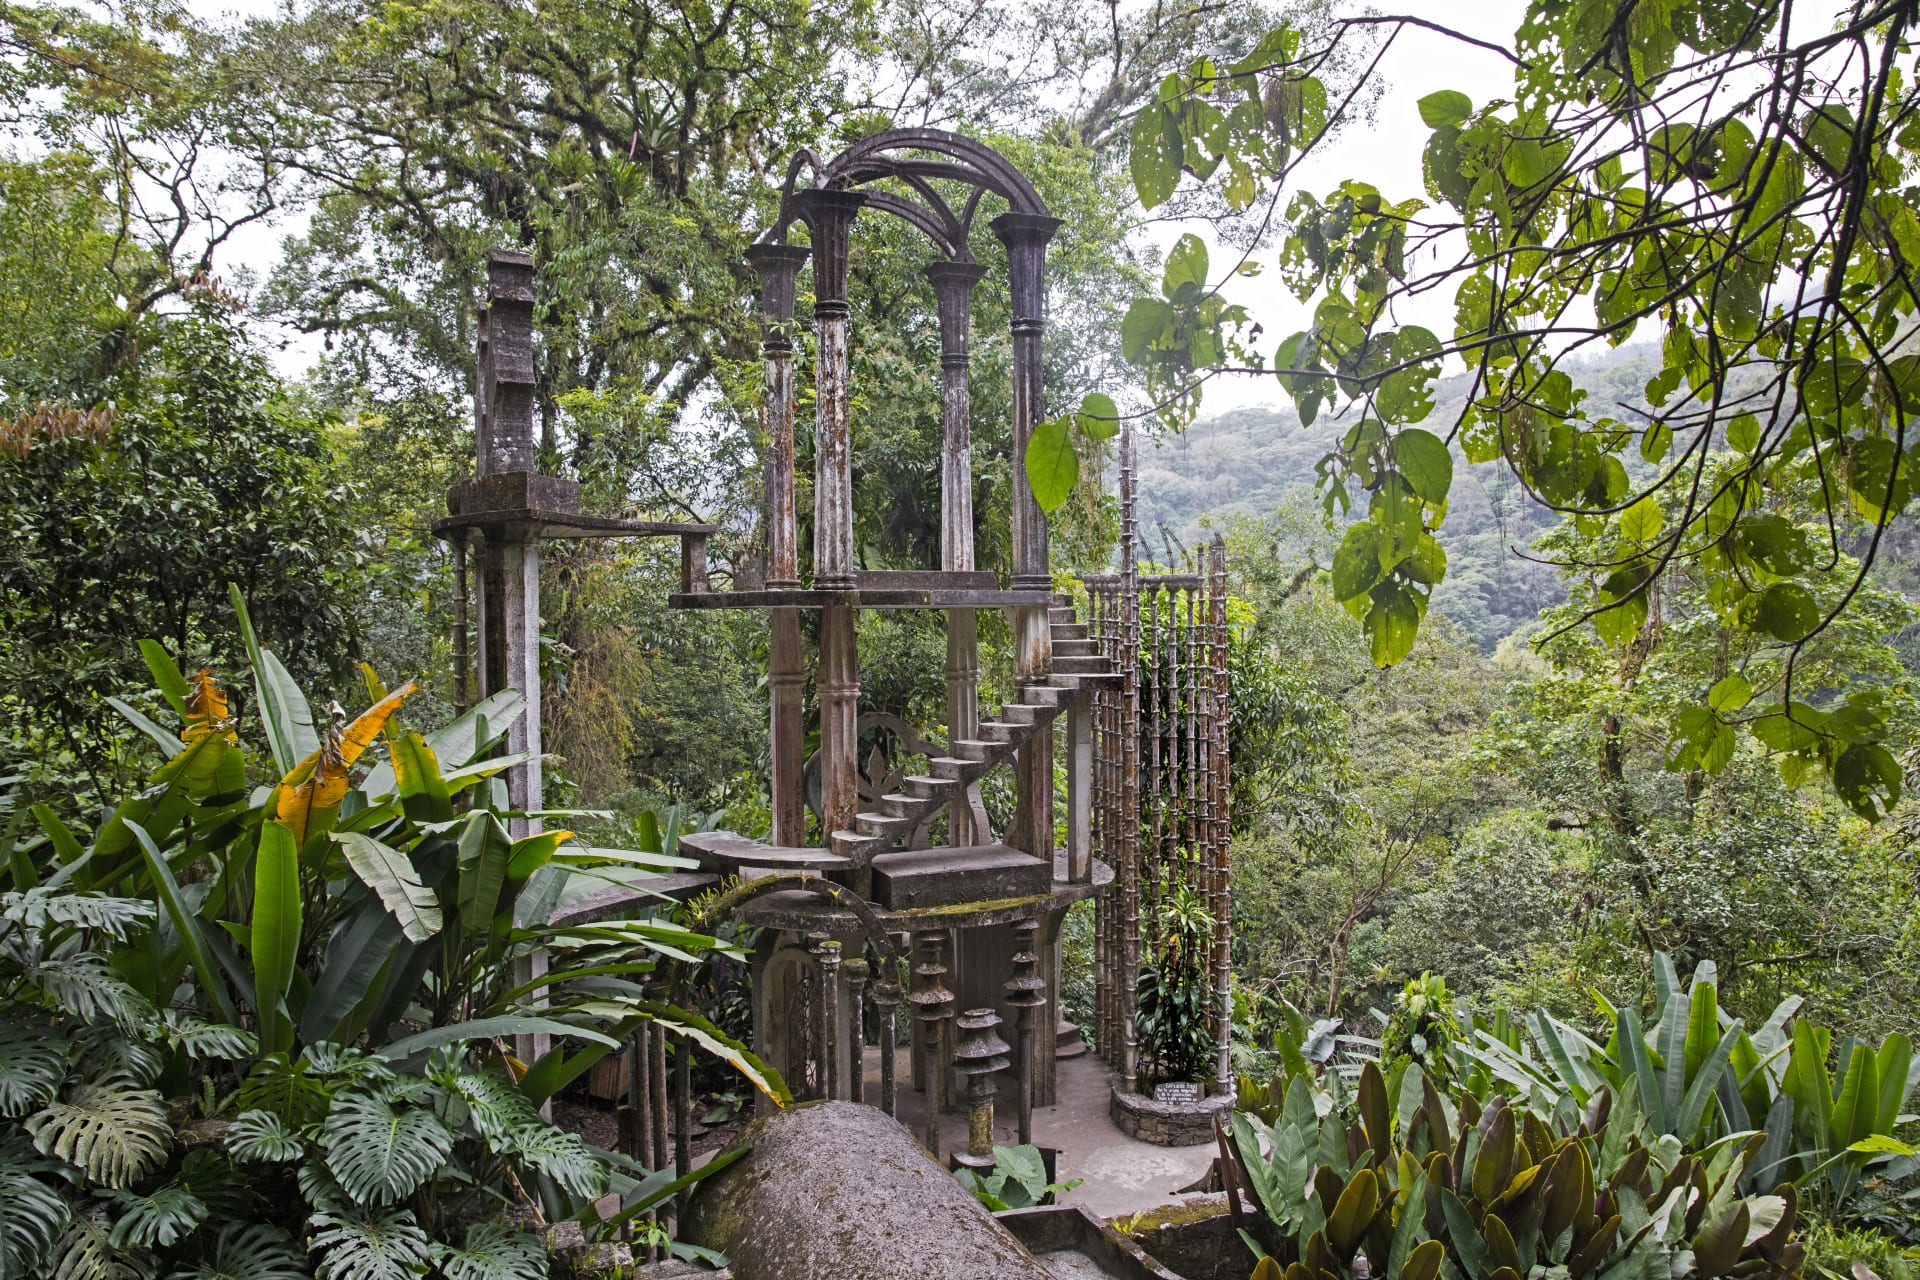 Las Pozas je surrealistická zahrada ukrytá v džungli v mexickém městě Xilitla.